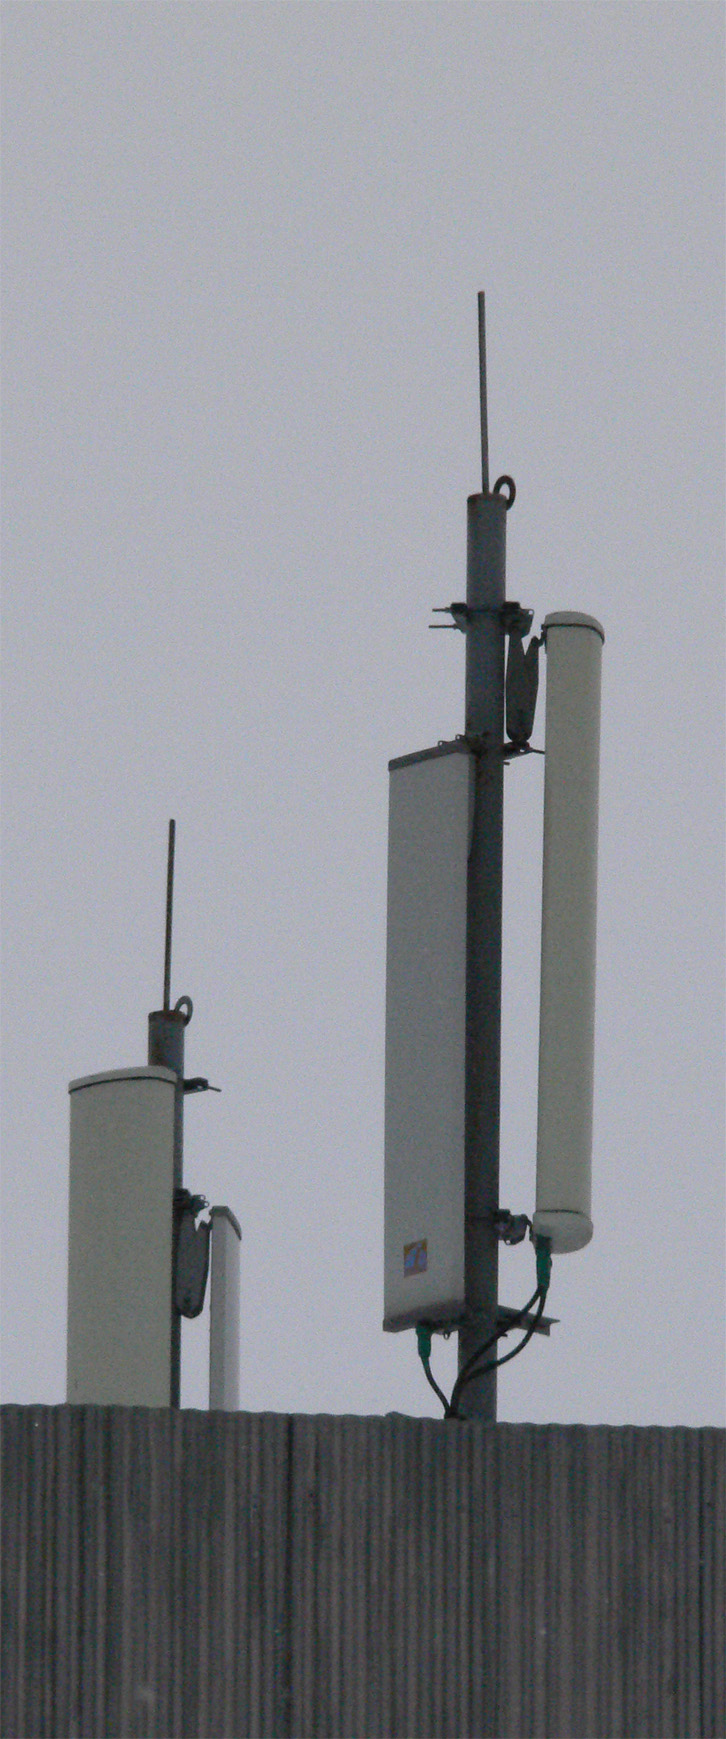 CEM-antenne2-3